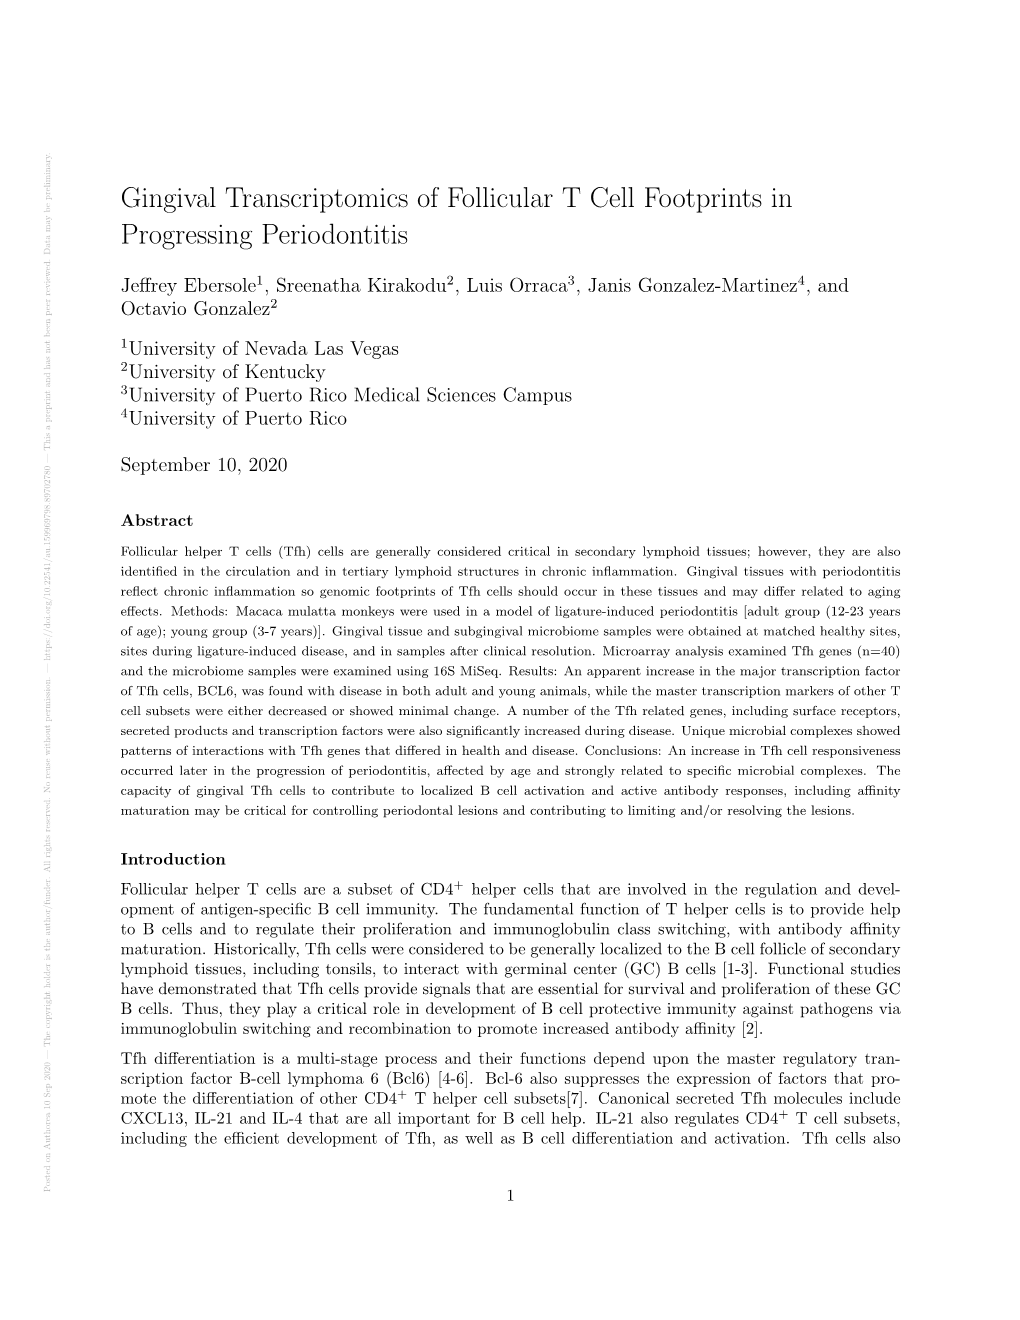 Gingival Transcriptomics of Follicular T Cell Footprints in Progressing